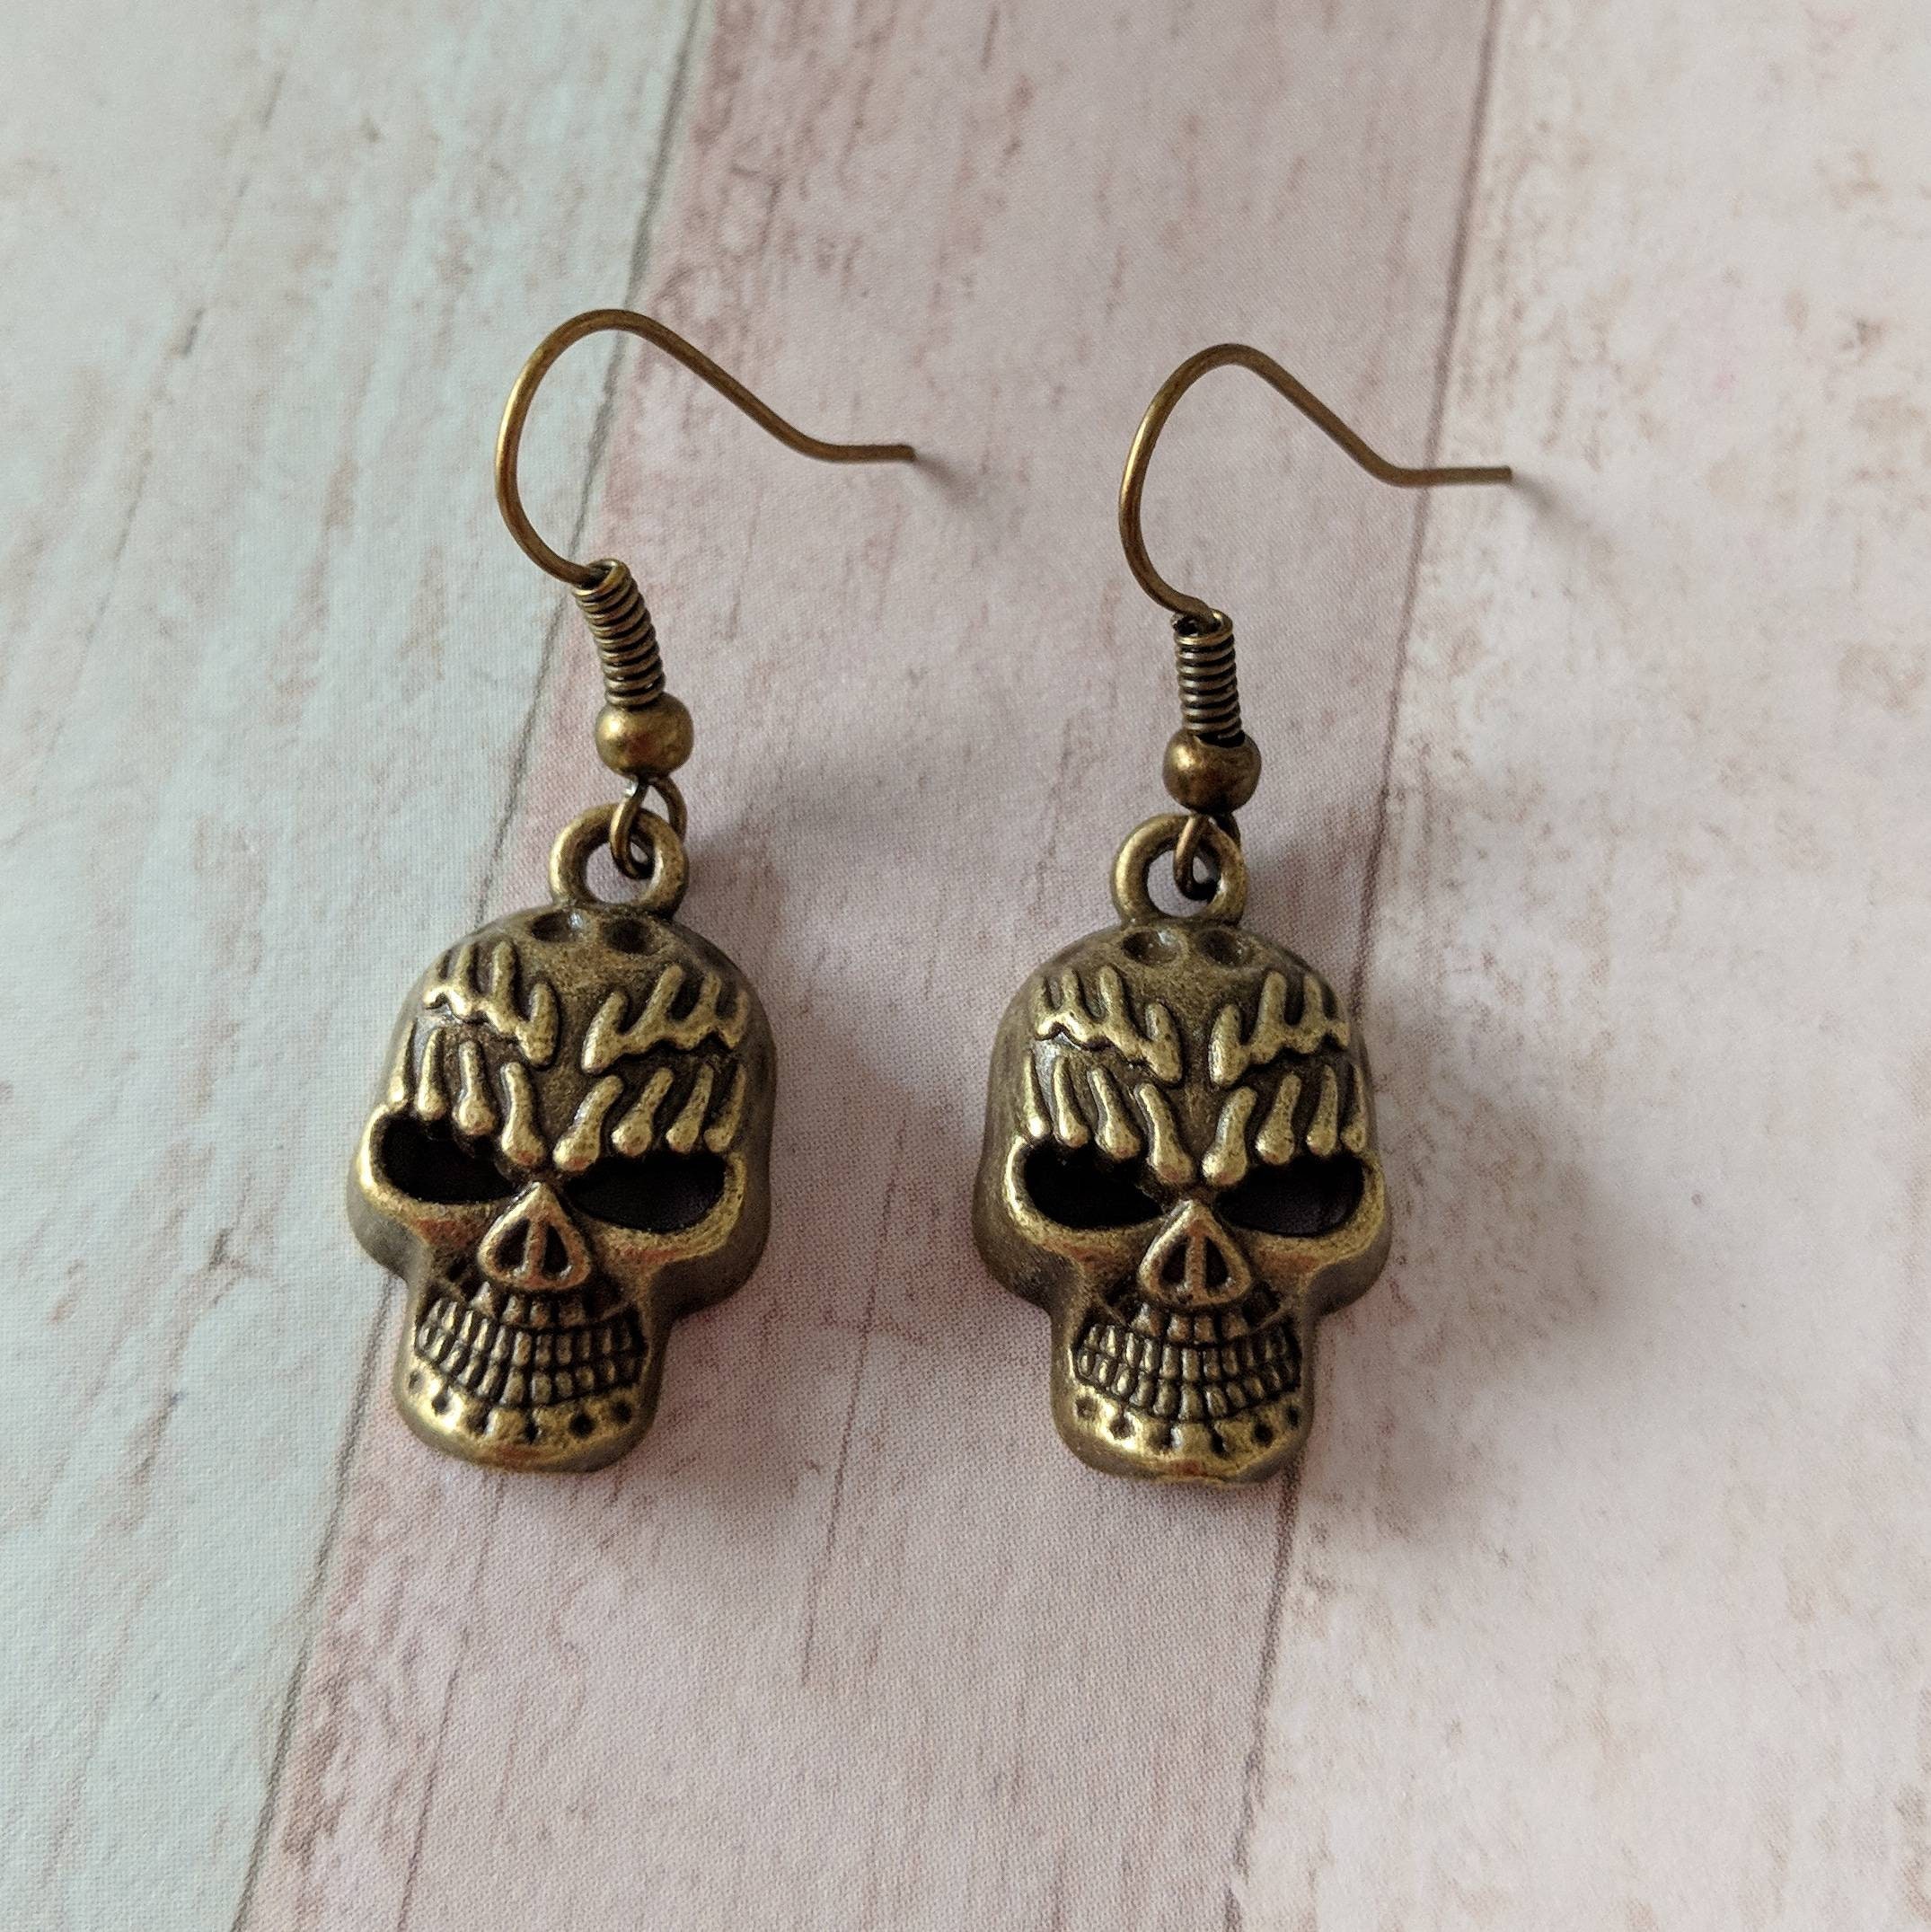 Skull Earrings Skull Jewellery Gothic Earrings Punk - Etsy UK